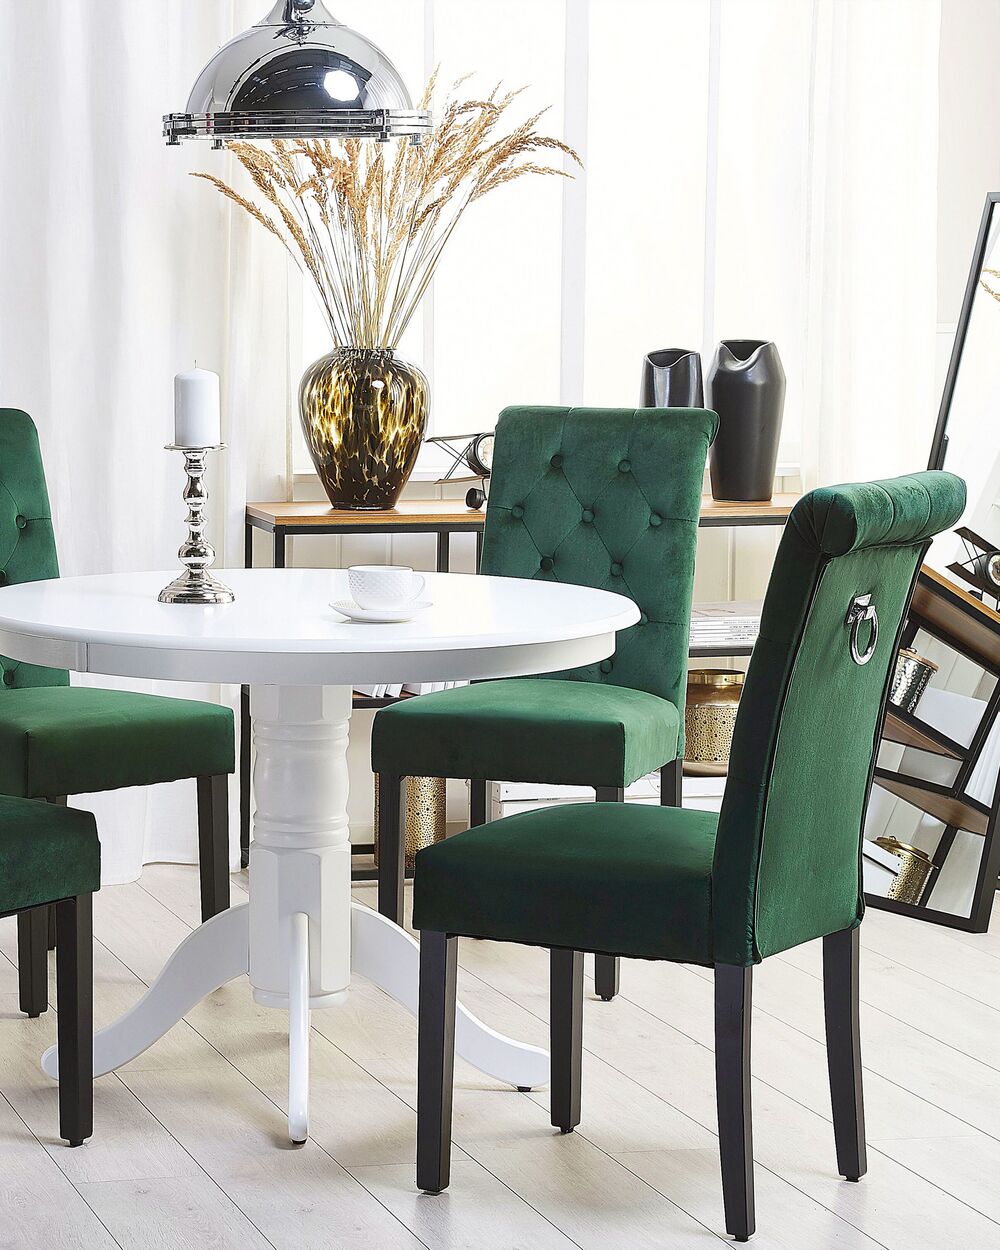 Set di 2 sedie scandinave in velluto verde 53*54*75 cm